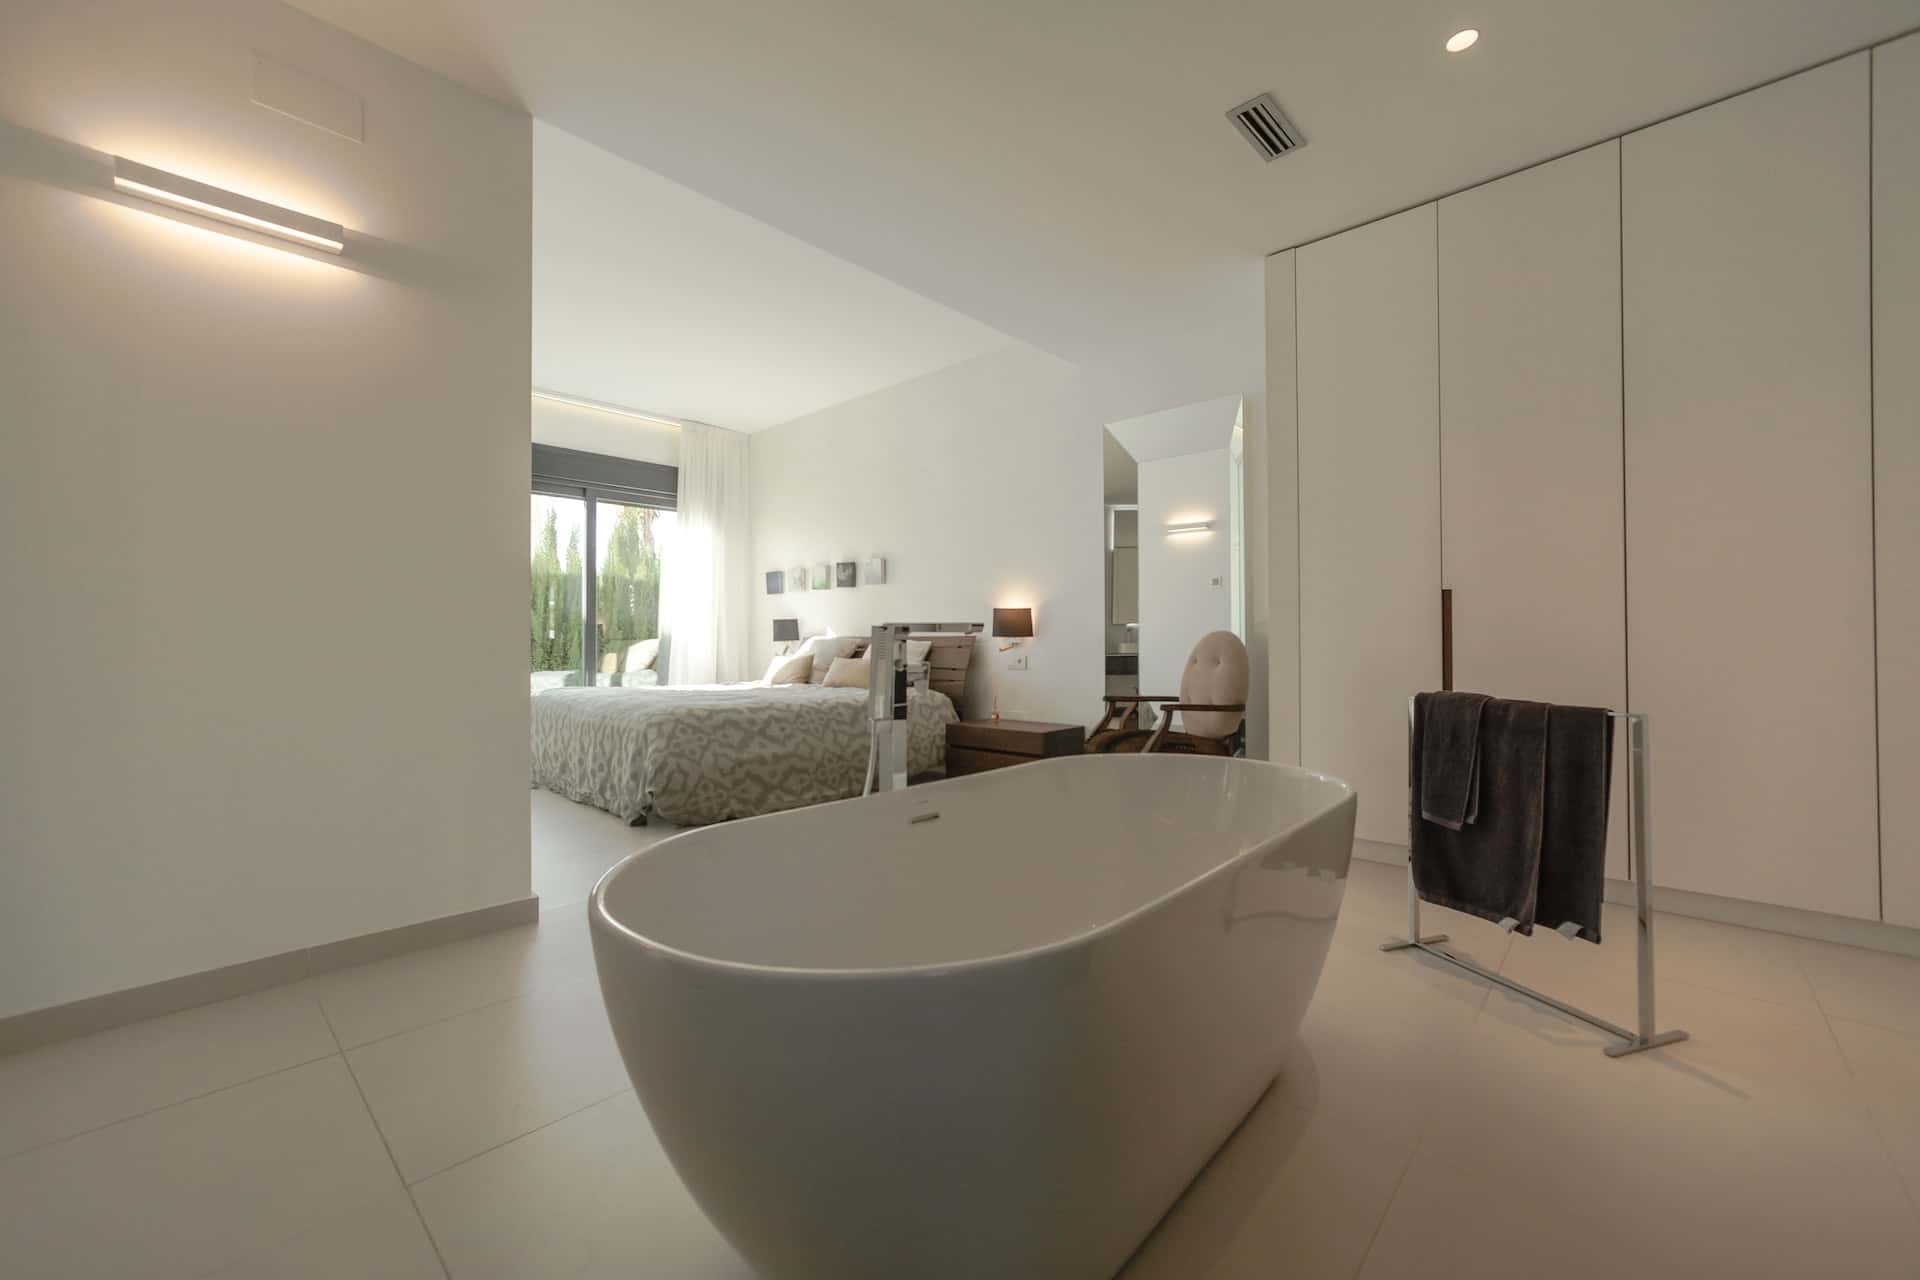 sleek bath tubs